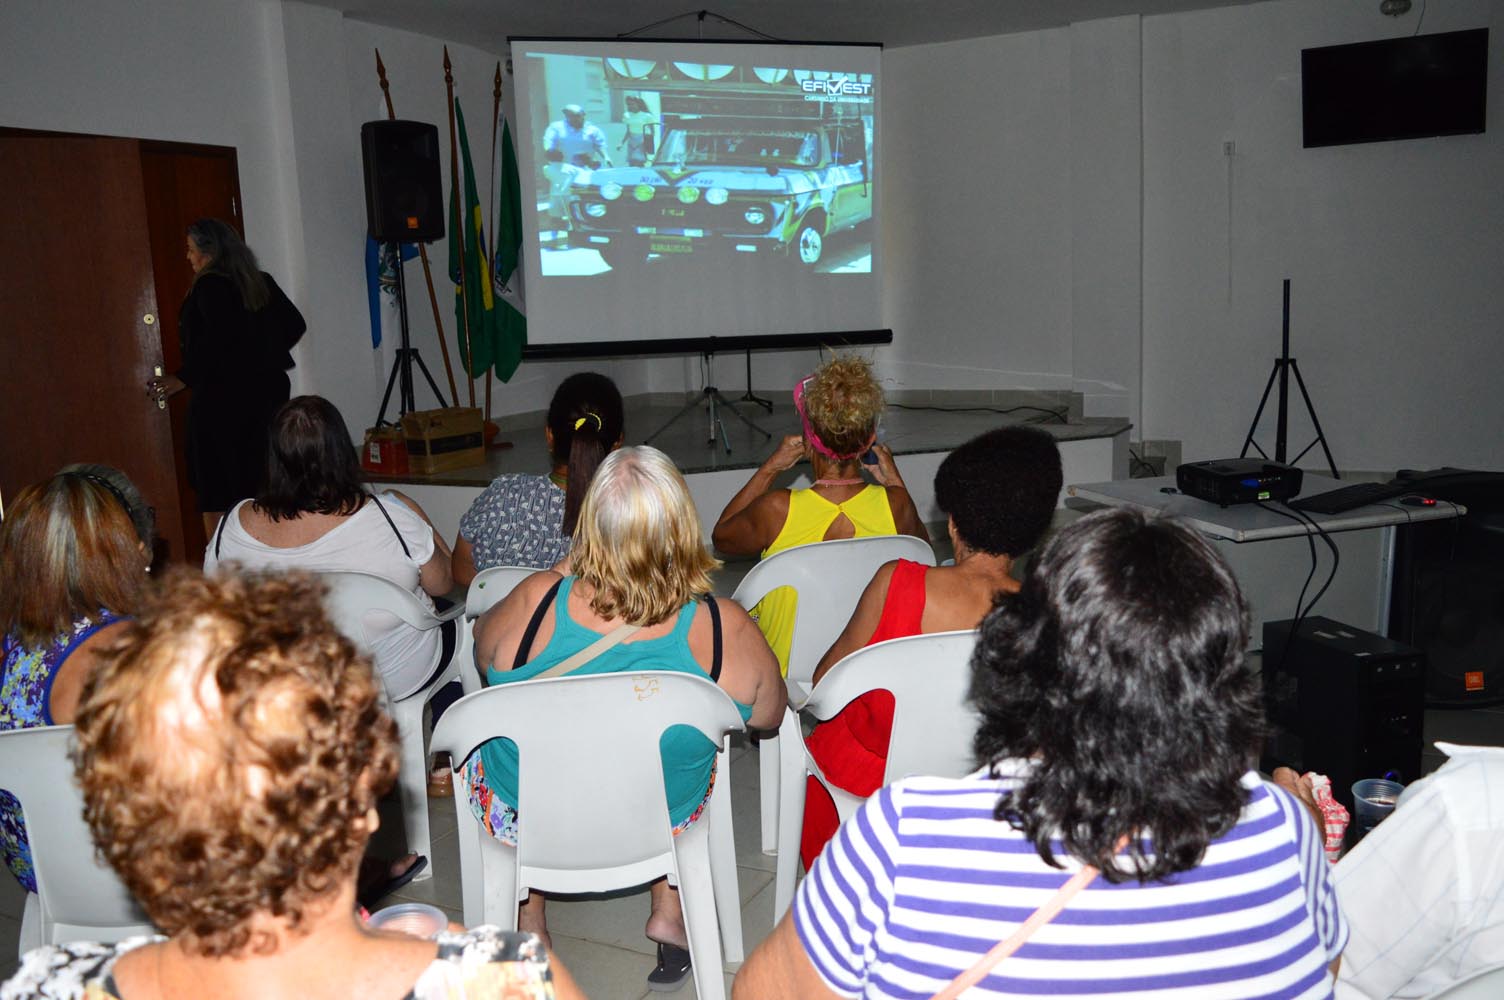 Prefeitura promove sessão gratuita de cinema  para os idosos de Queimados nesta sexta